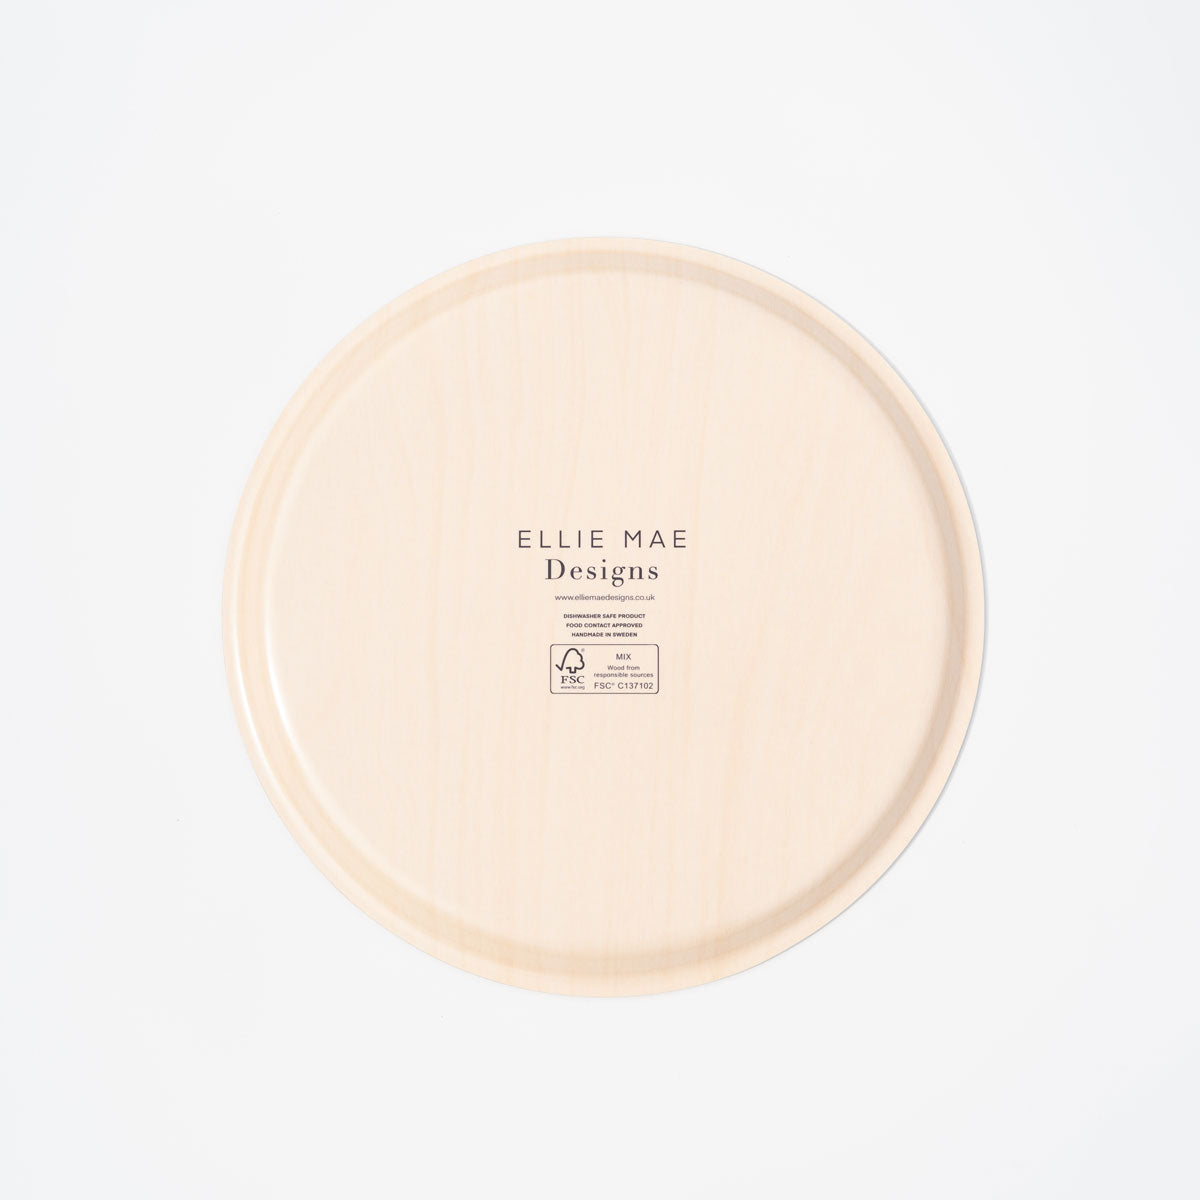 FSC certified lemon patterned birch wood tray 